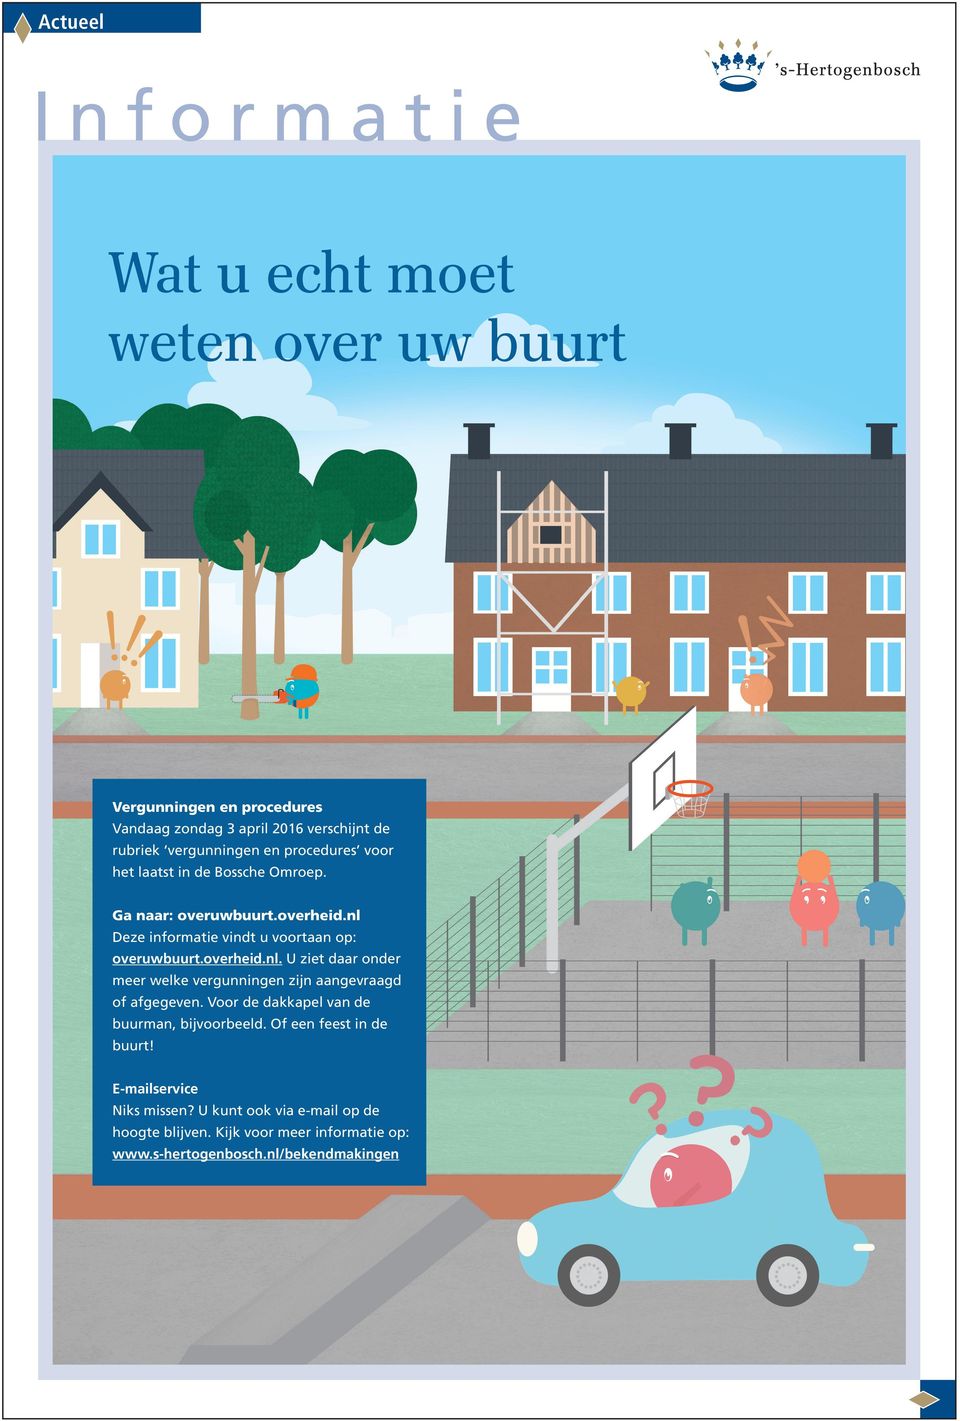 Deze informatie vindt u voortaan op: overuwbuurt.overheid.nl. U ziet daar onder meer welke vergunningen zijn aangevraagd of afgegeven.